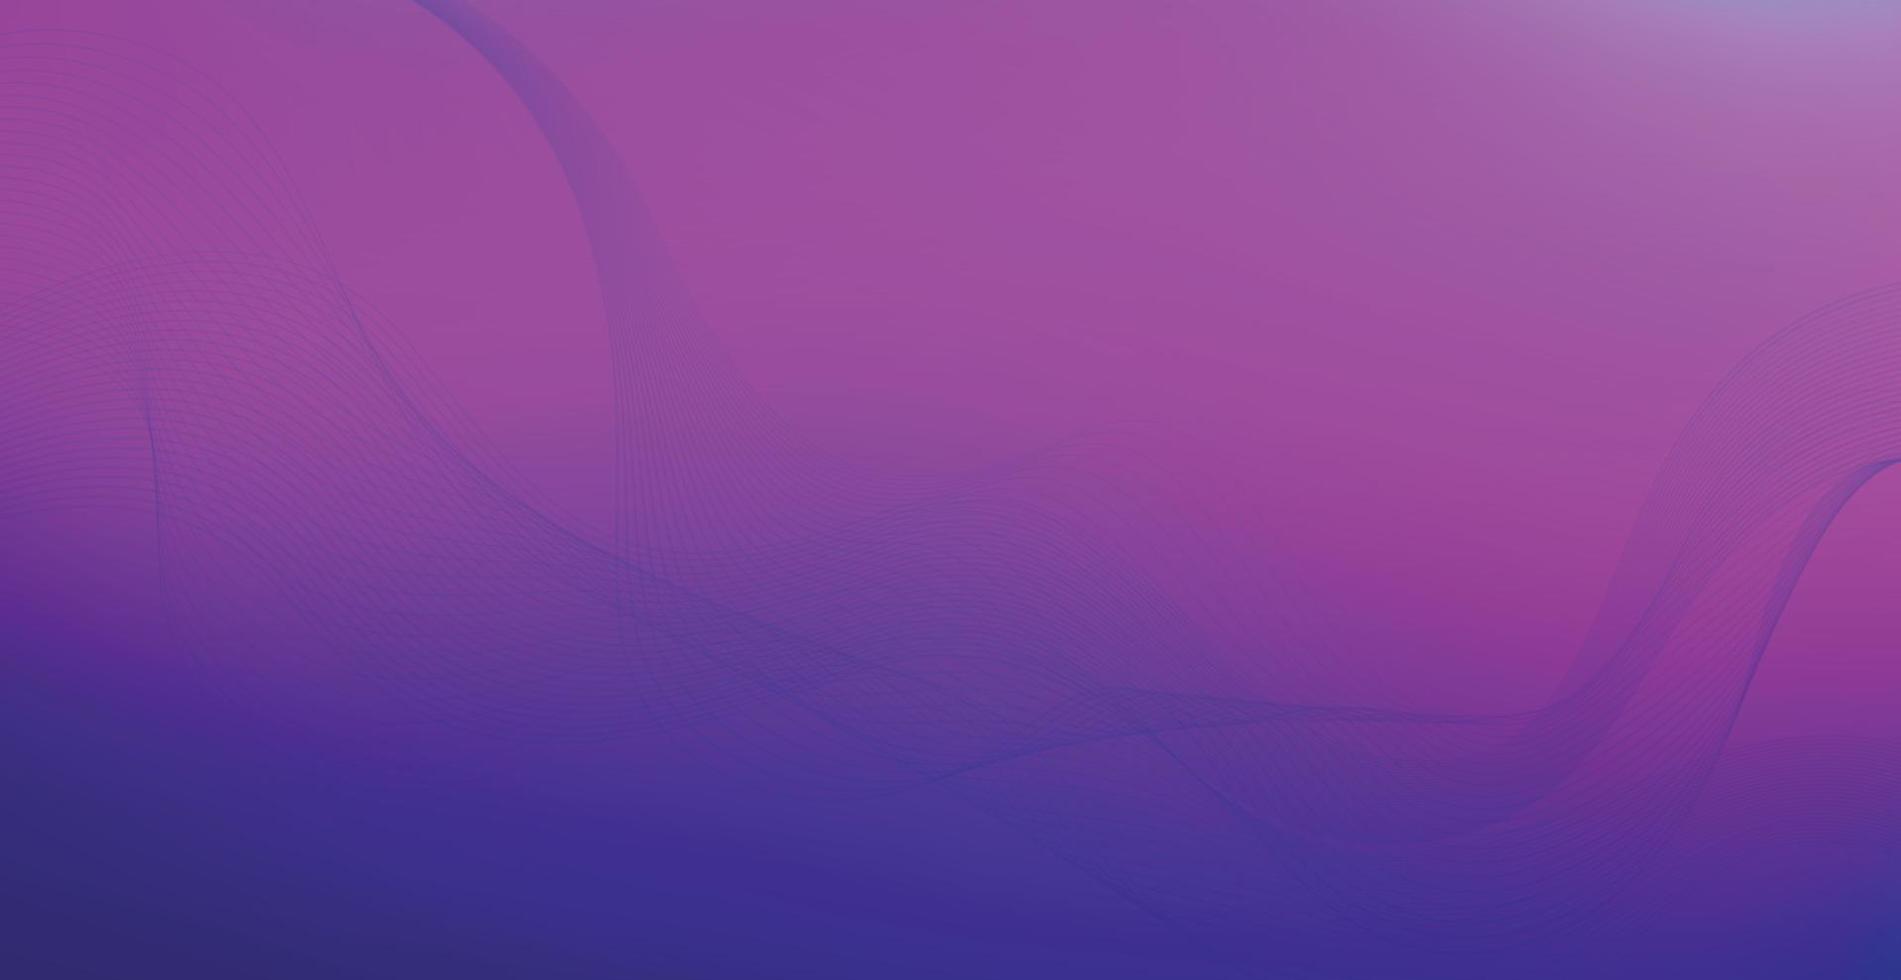 Panorámica azul púrpura luz abstracto elegante multi fondo con líneas onduladas - vector